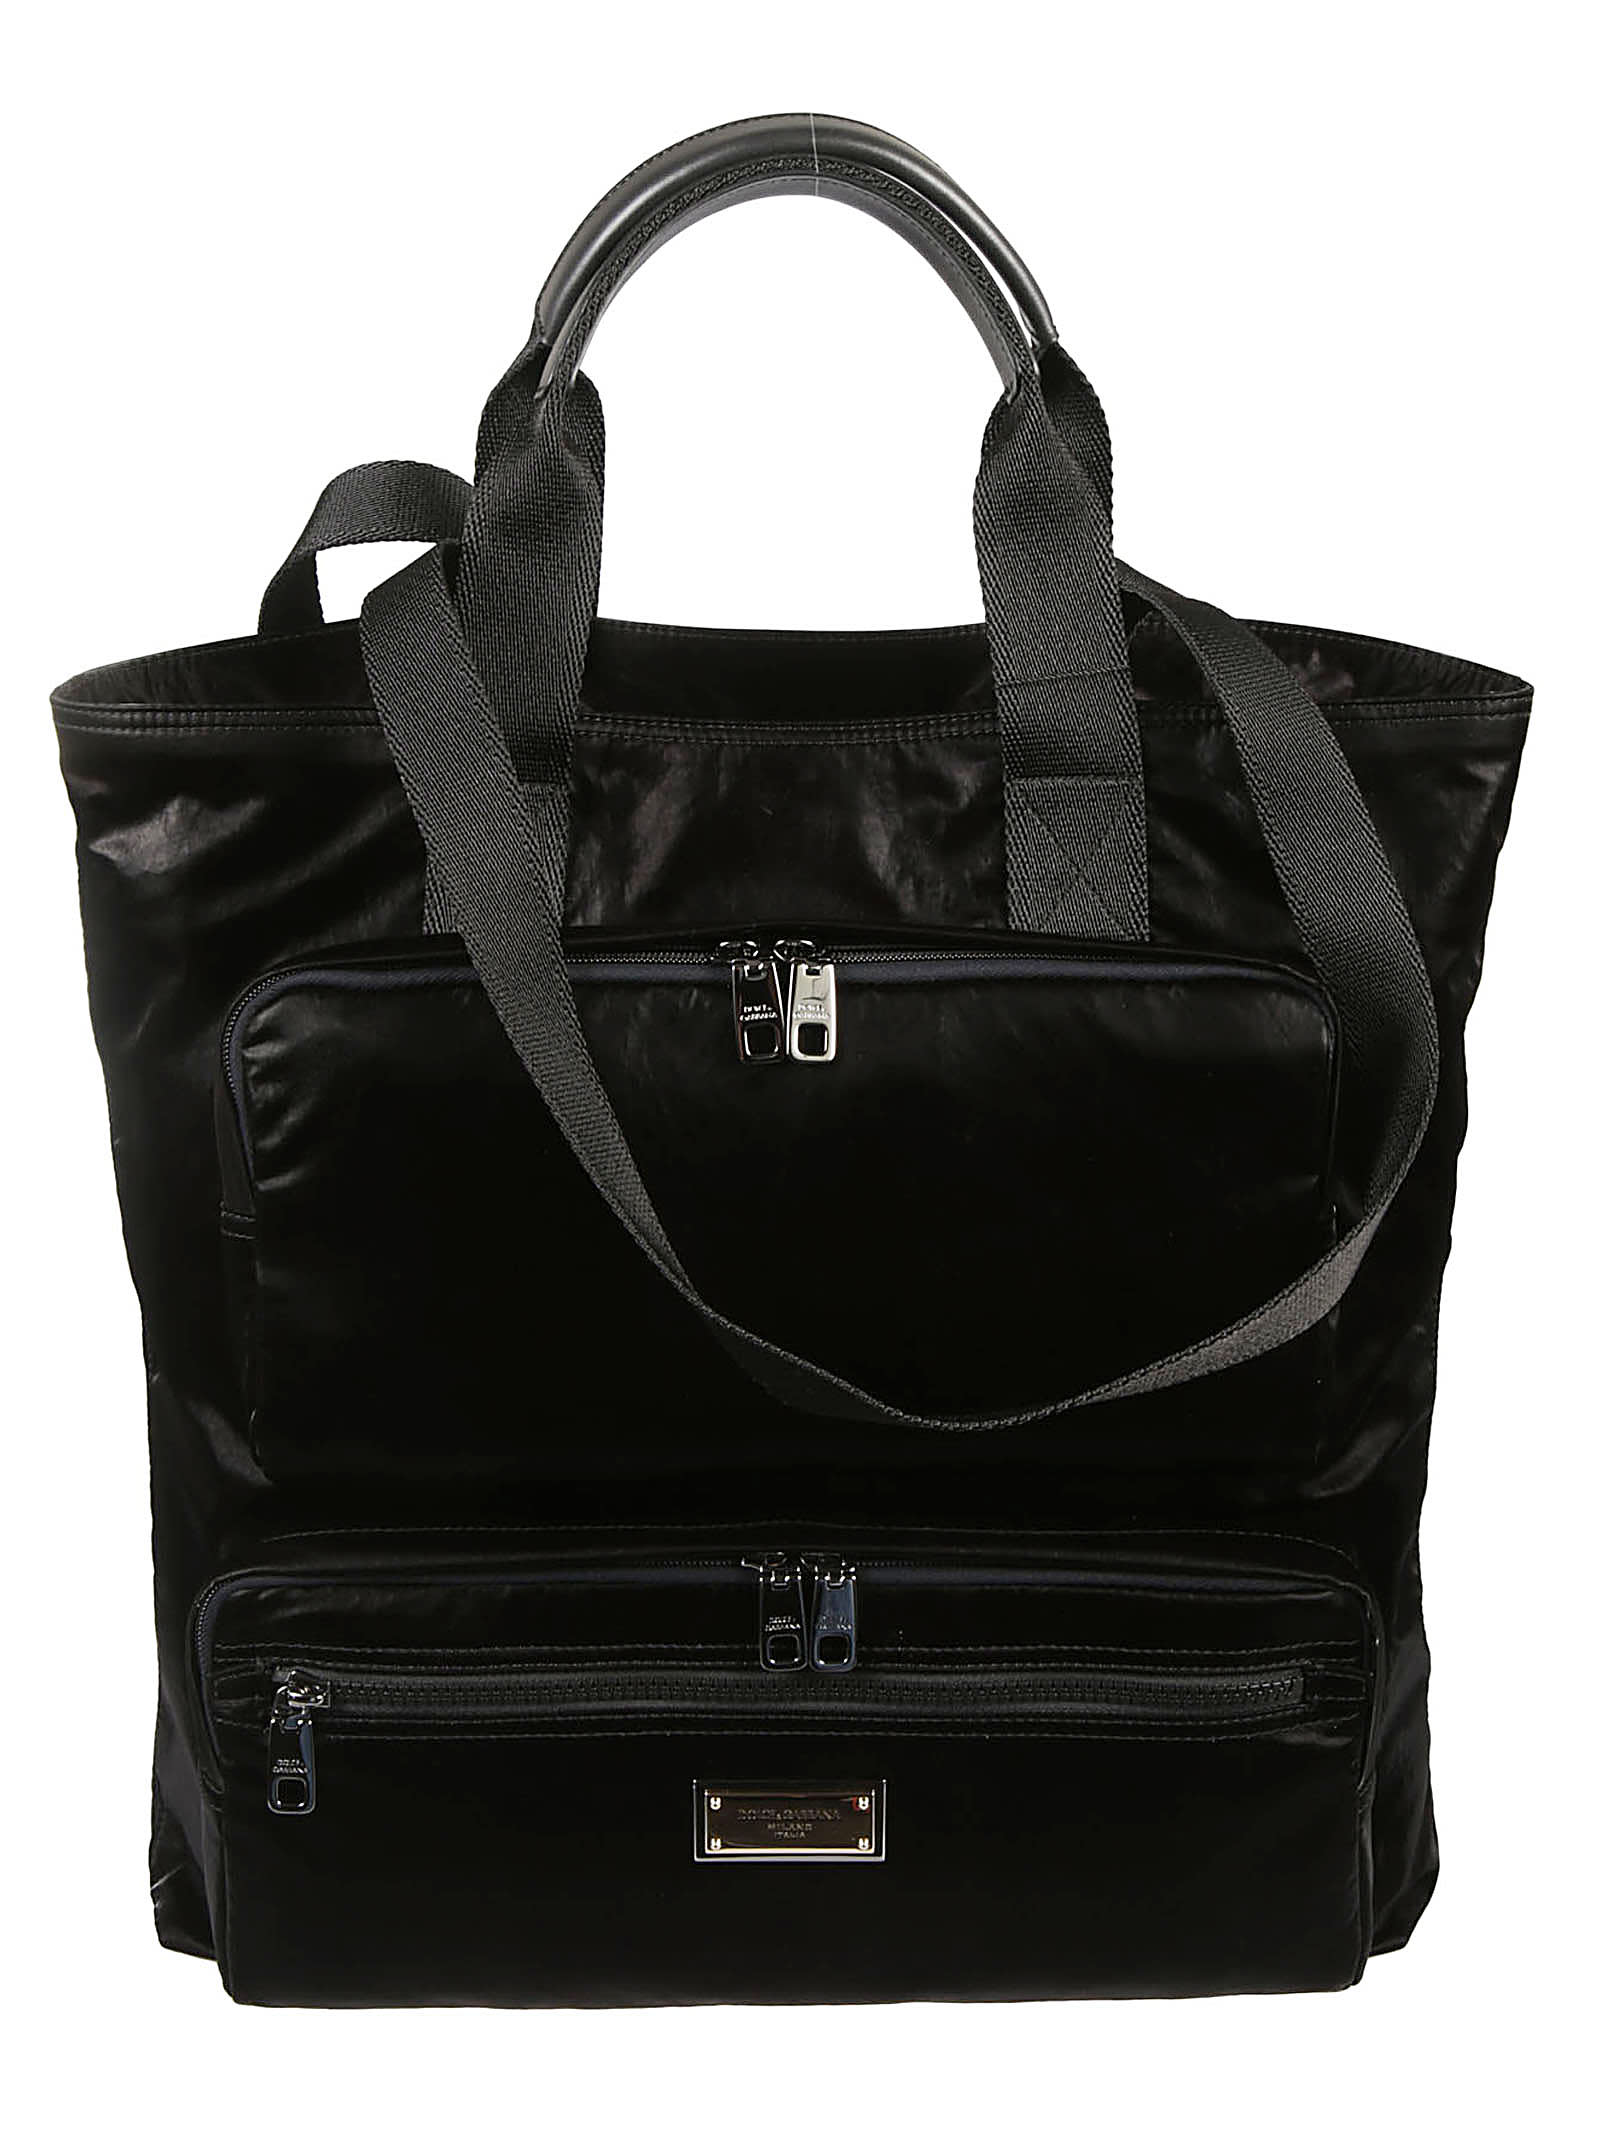 Dolce & Gabbana Front Pockets Shopper Bag In Black